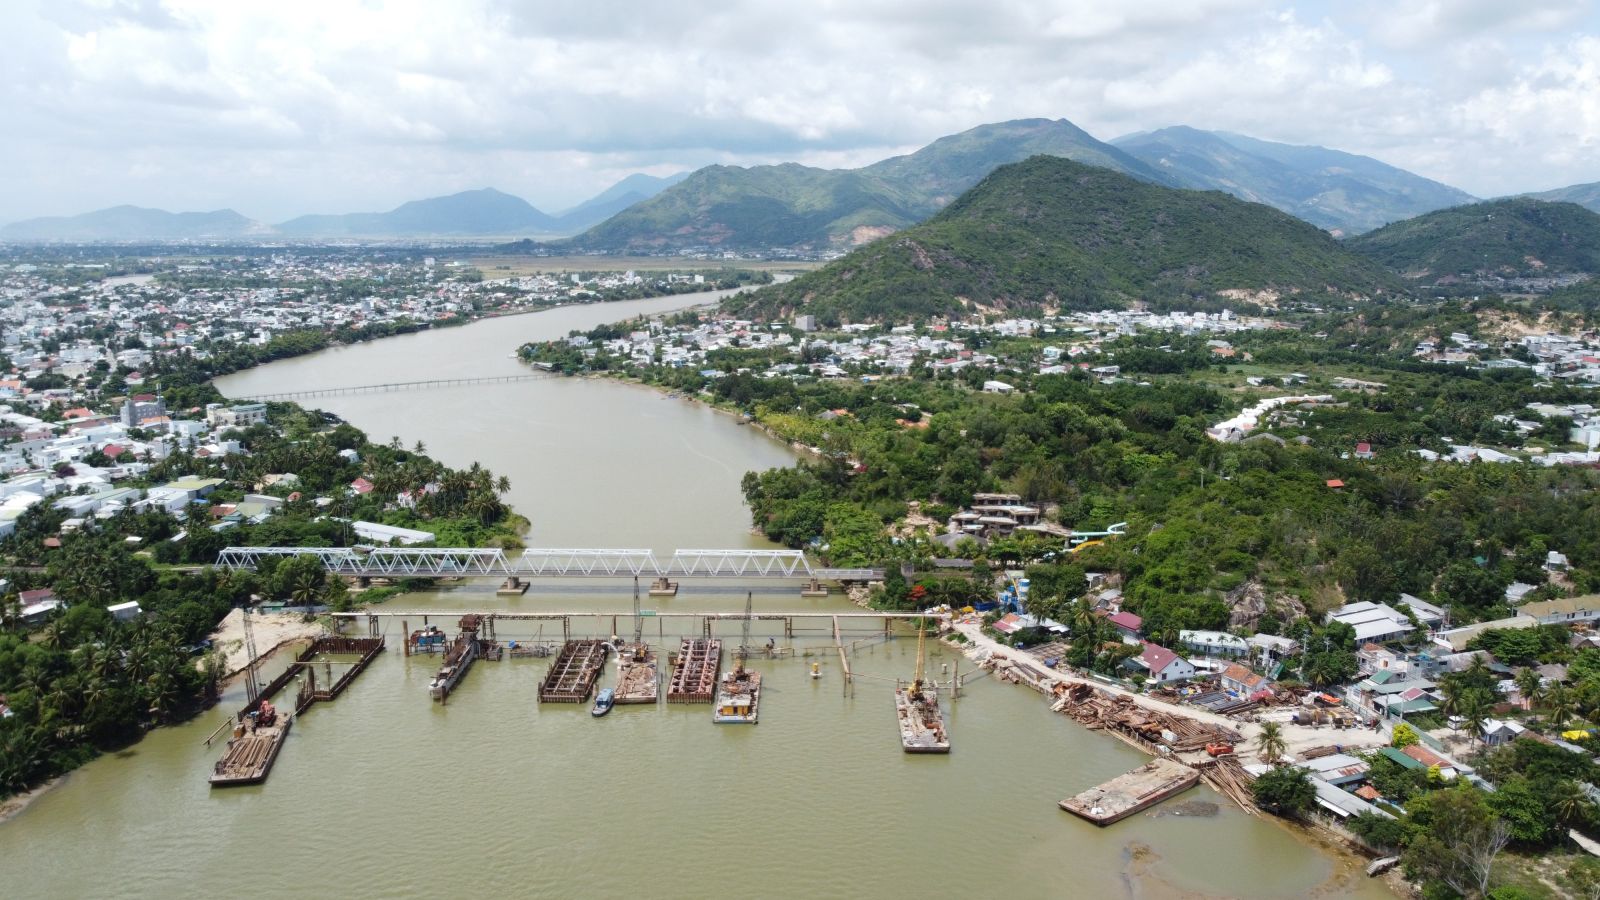 Dự án Đập ngăn mặn sông Cái là dự án đa mục tiêu, không chỉ nhằm ngăn chặn tình trạng nhiễm mặn, mà còn kết hợp giao thông qua sông Cái theo đường Vành đai 2, tạo động lực phát triển kinh tế - xã hội cho TP.Nha Trang.